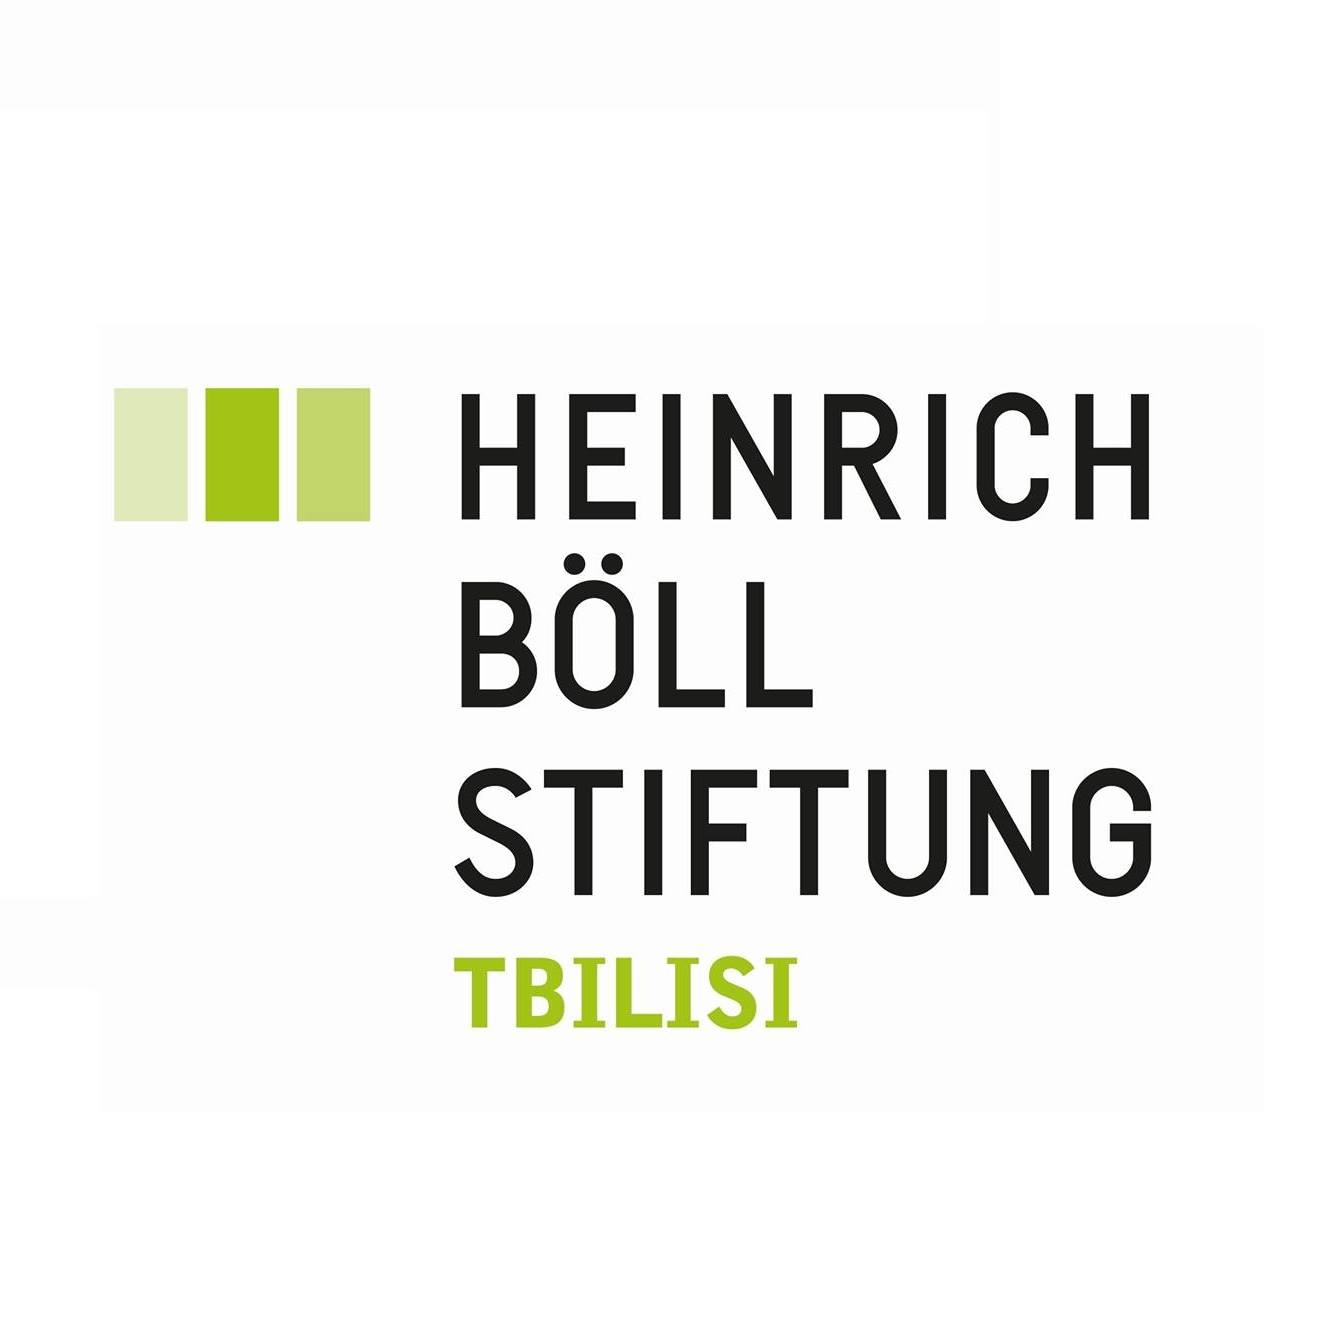 ურბანული განვითარება (Heinrich Boell Foundation)